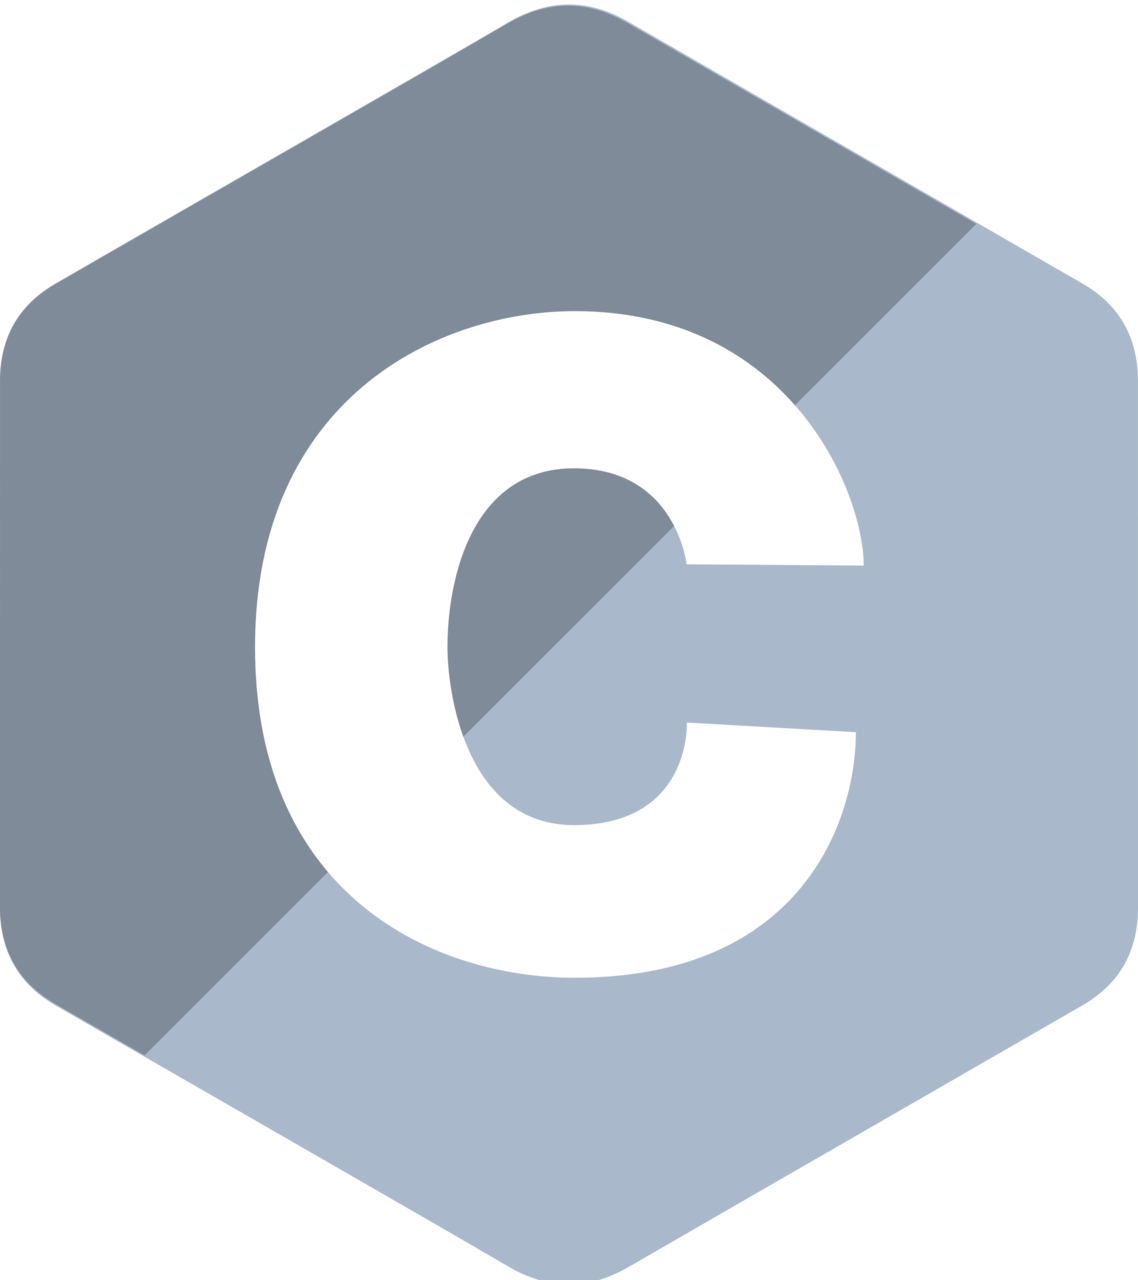 C language logo